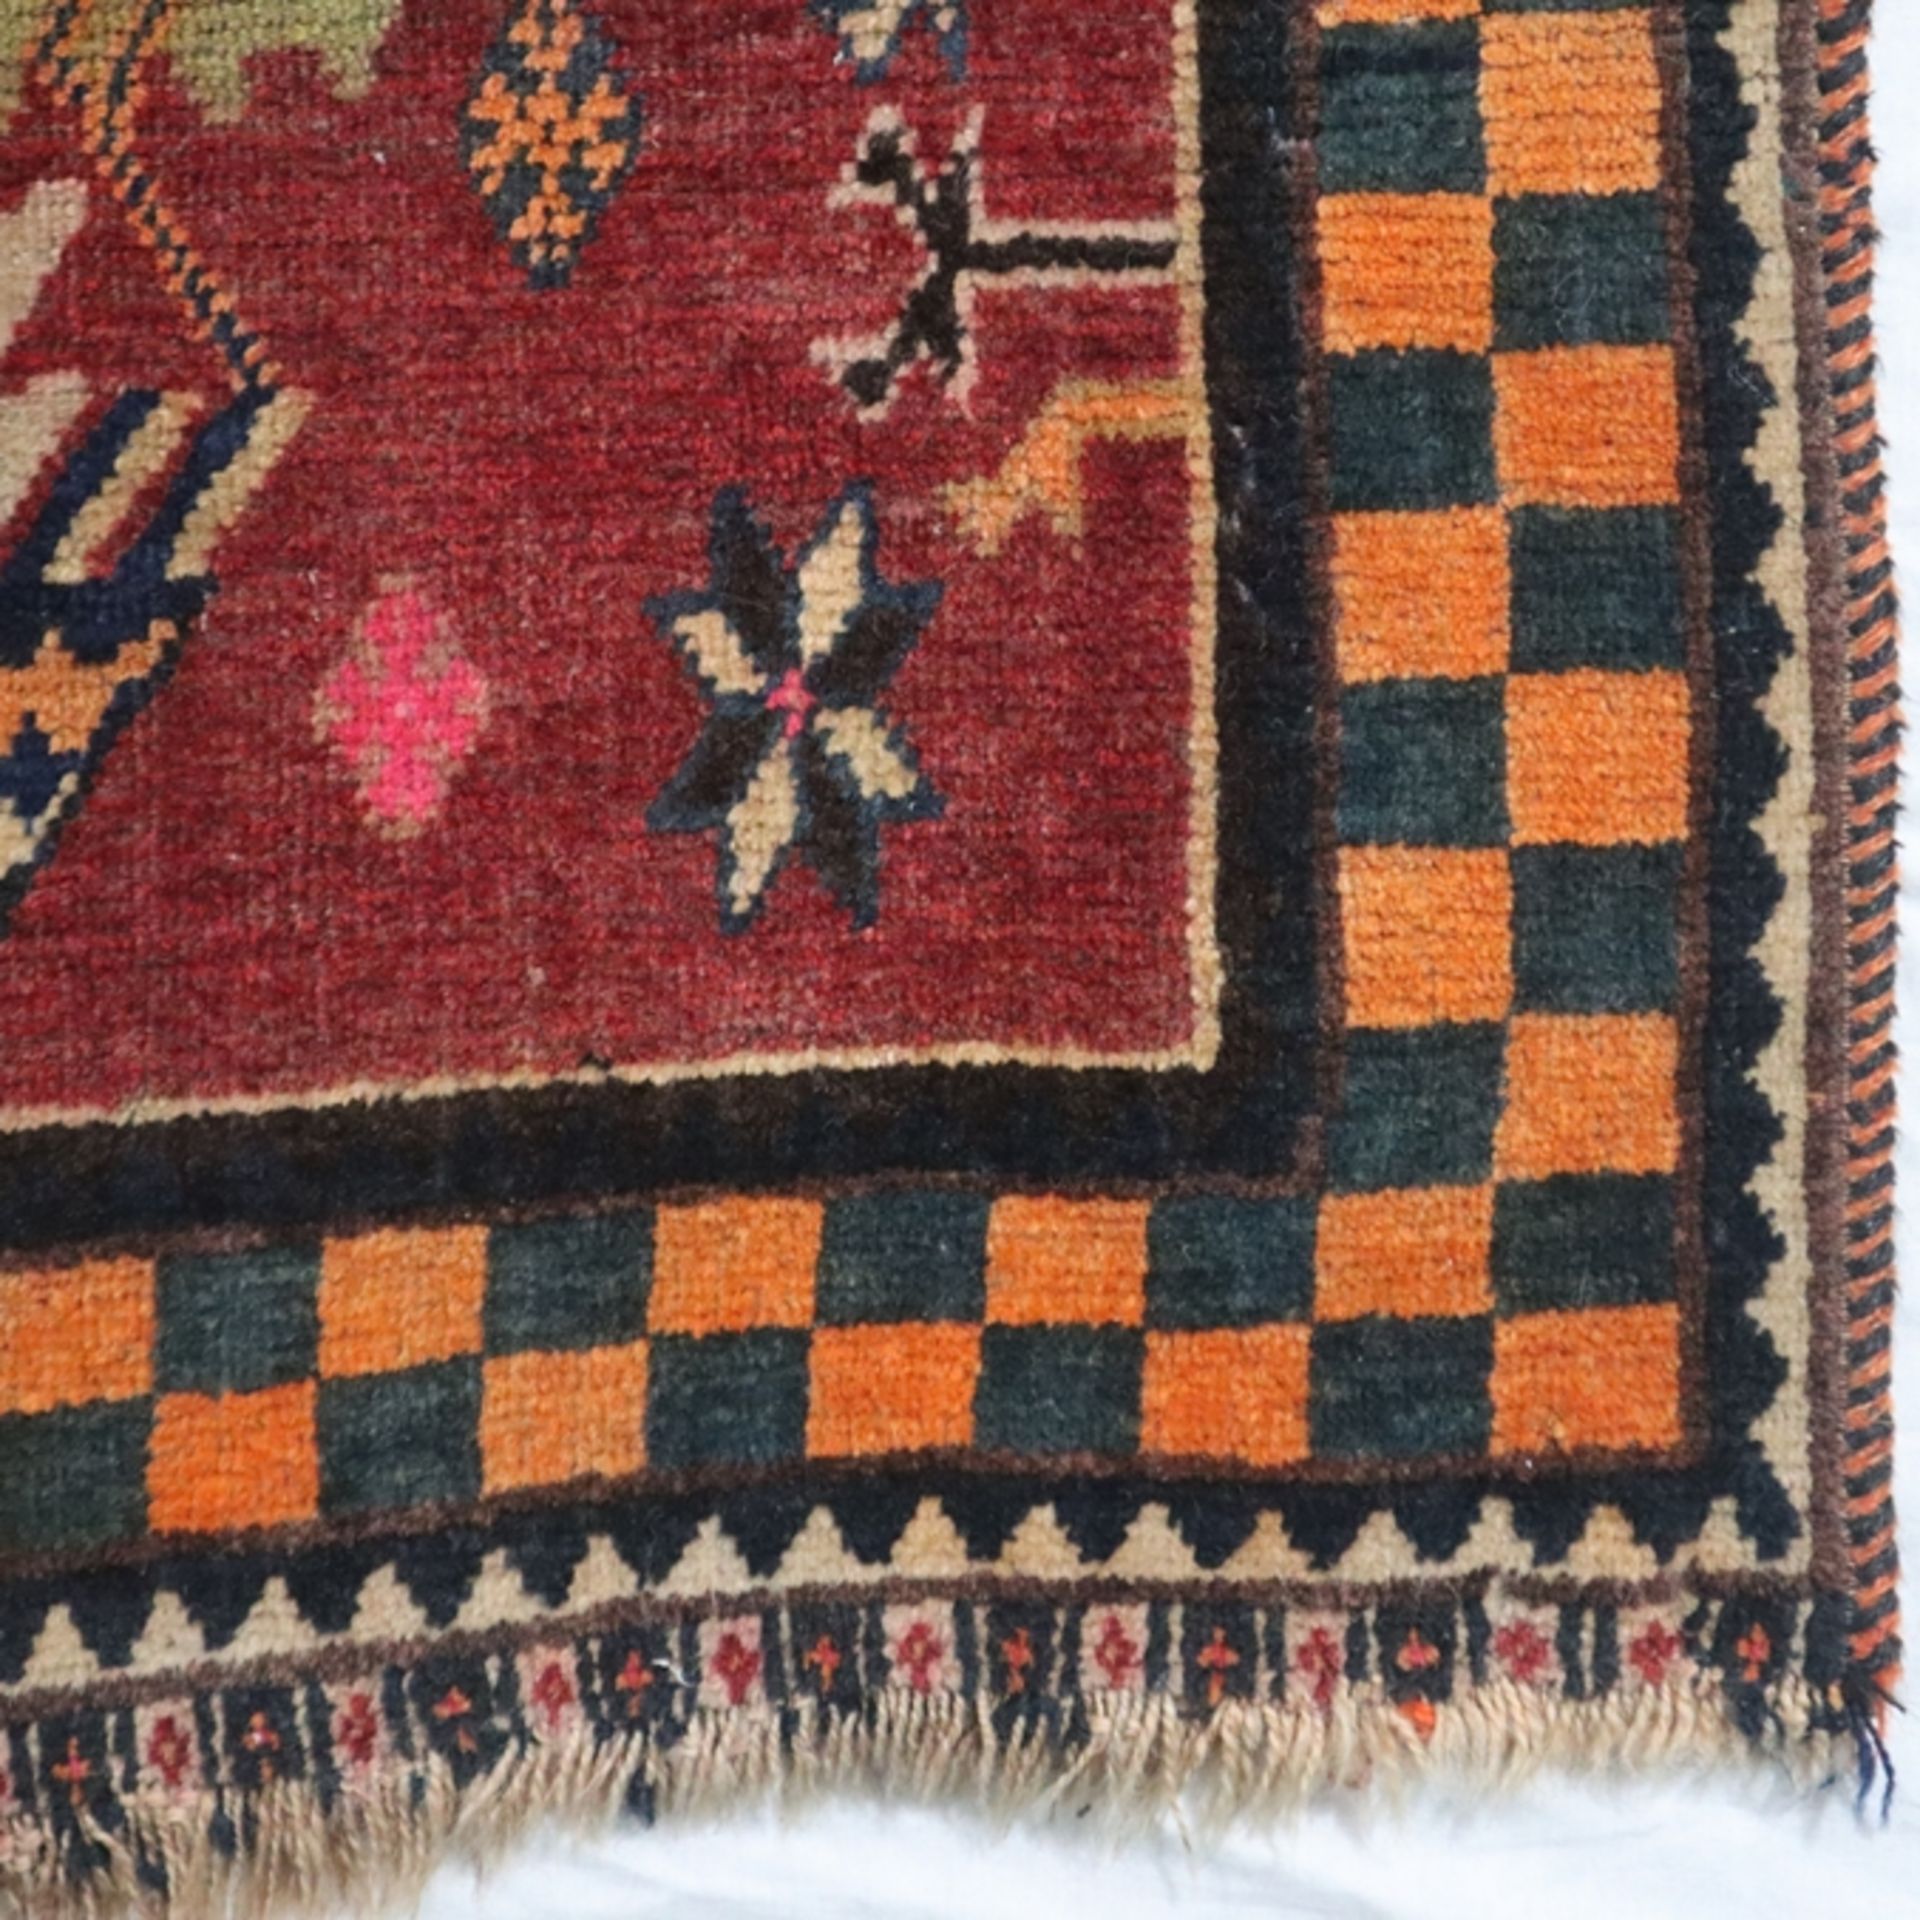 Teppich - wohl Kaukasus, Wolle, Pflanzenfarben, Vogelmuster, Rand mit Schachbrettmuster, Gebrauchss - Bild 4 aus 10